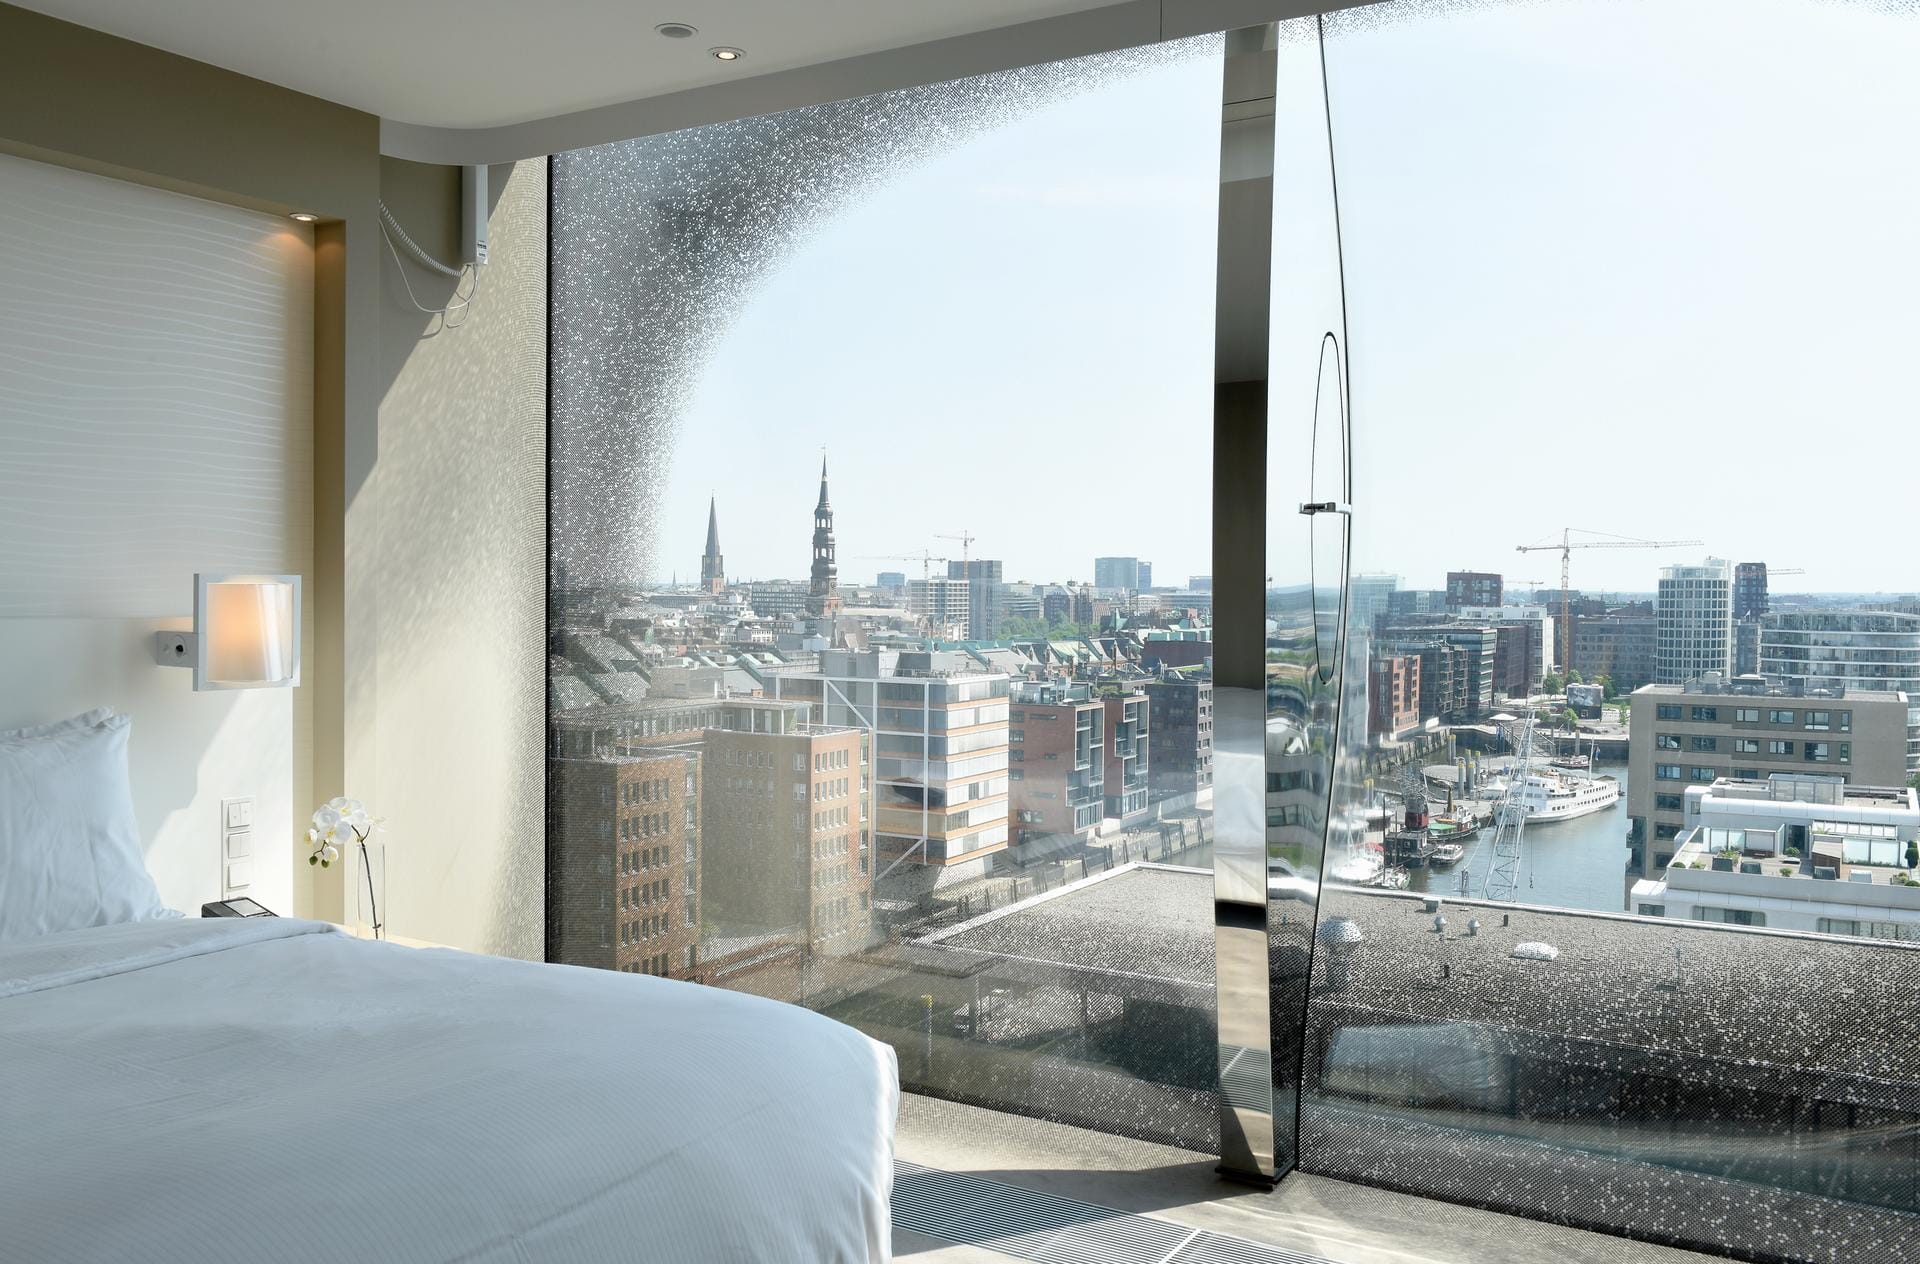 Die Zimmer des Nobelhotels punkten vor allem mit der Aussicht. Von den insgesamt 244 Zimmern und Suiten zeigen nur 33 zum Lichthof. Alle anderen haben Blick auf Hafencity, Innenstadt, Elbe oder Industriehafen.